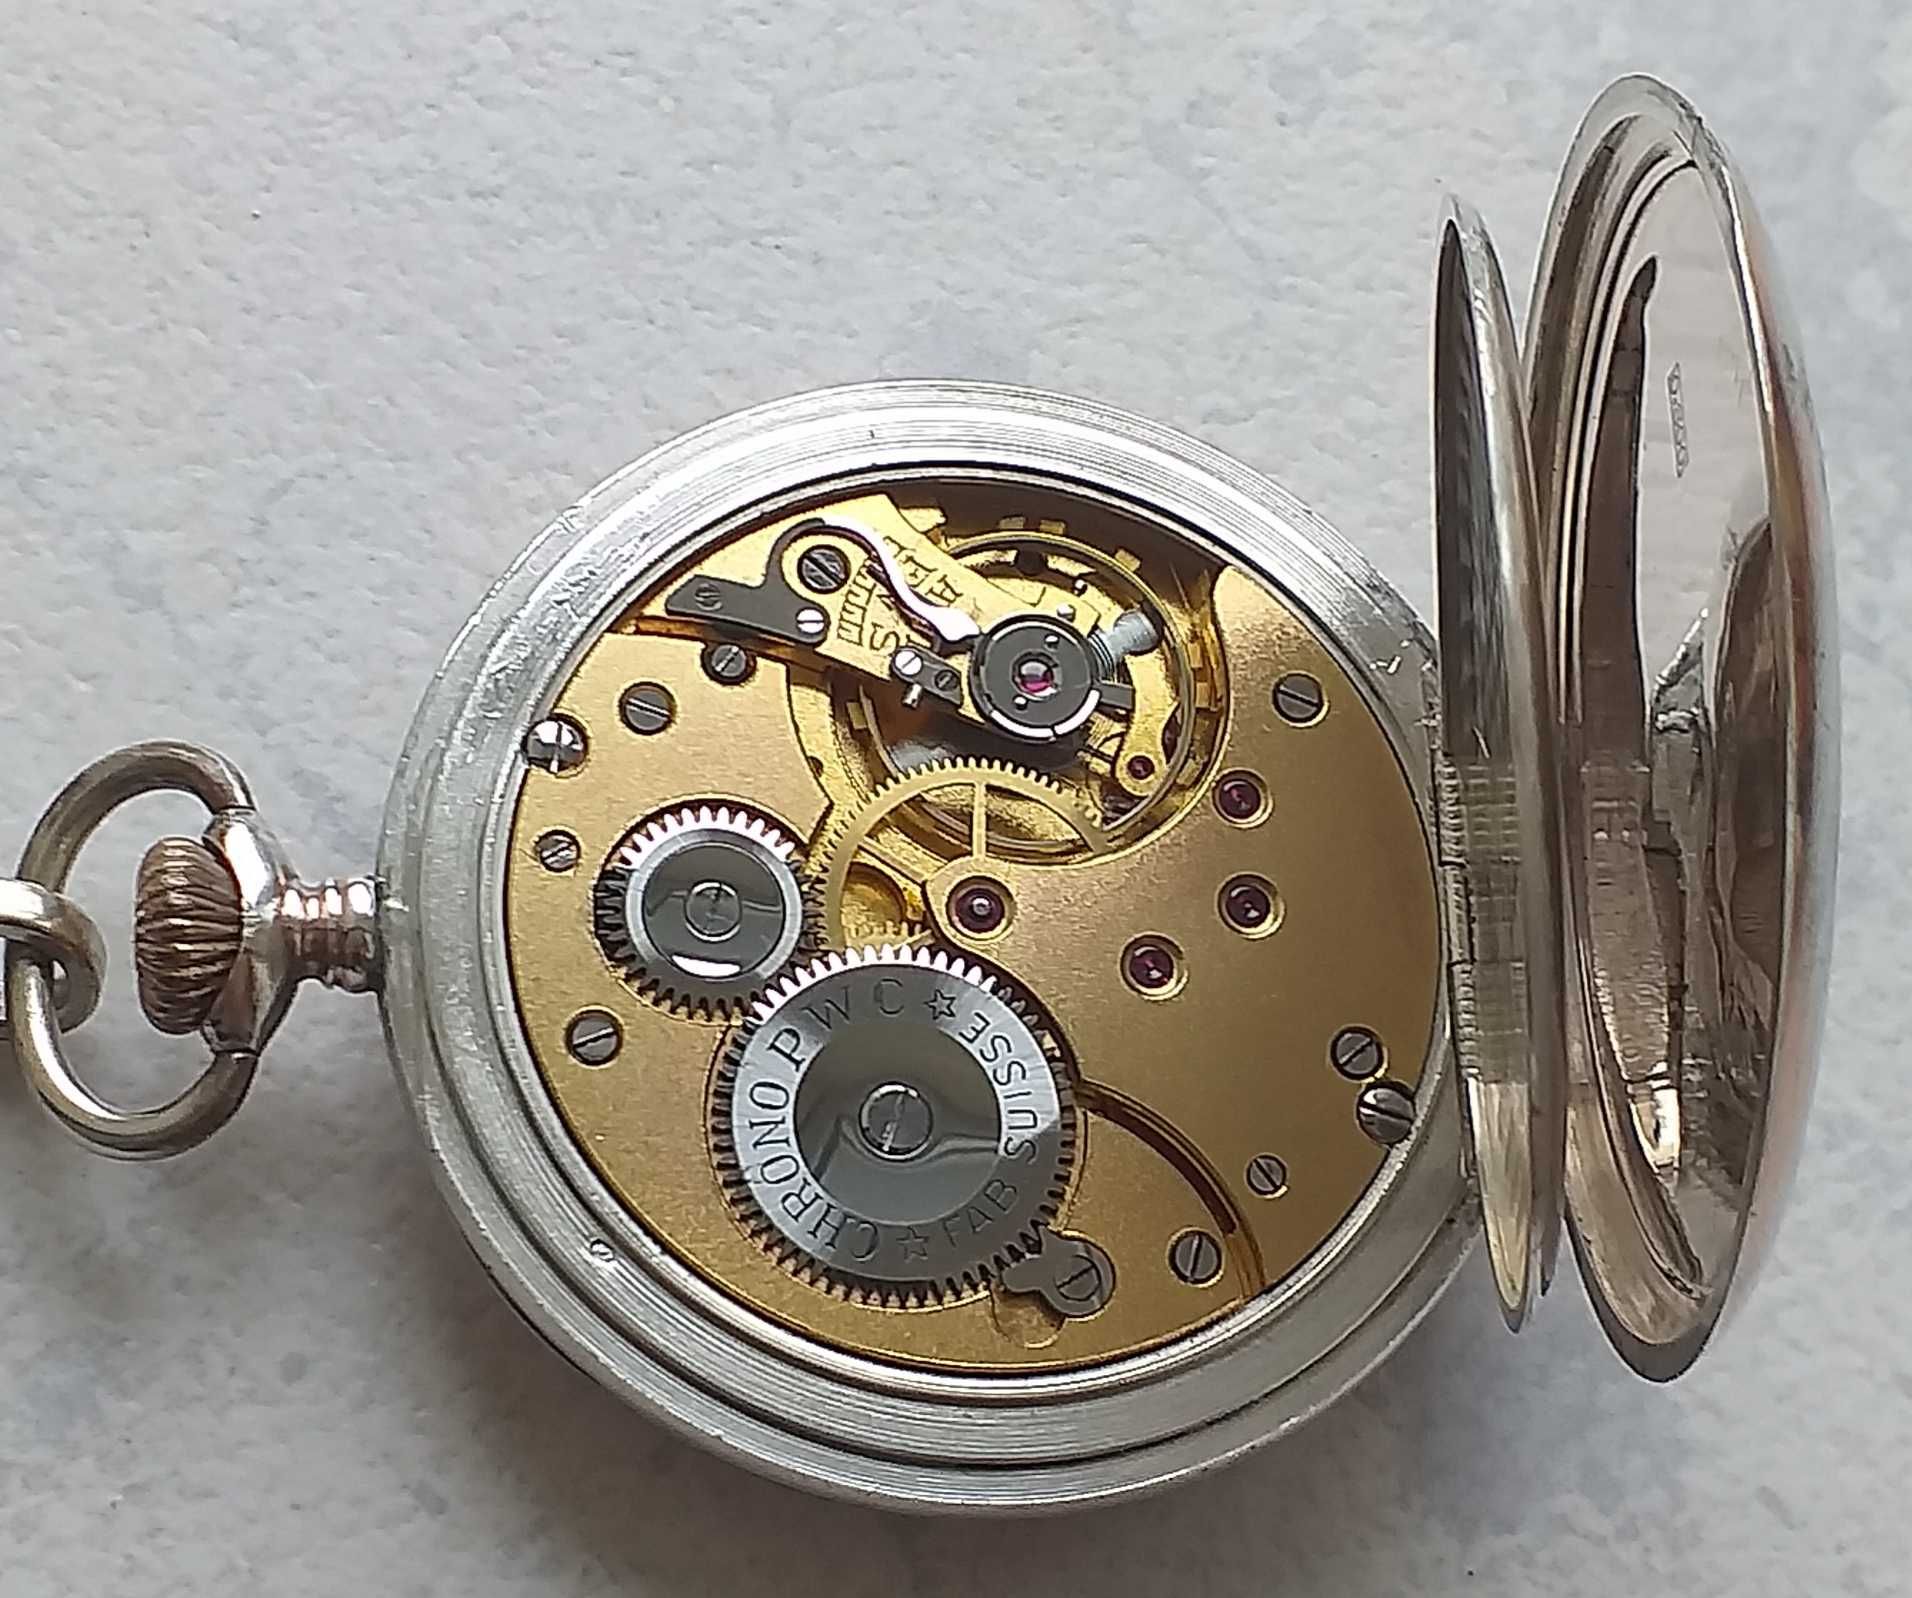 Ceas antic de buzunar din argint.Fabricat in Elvetia.